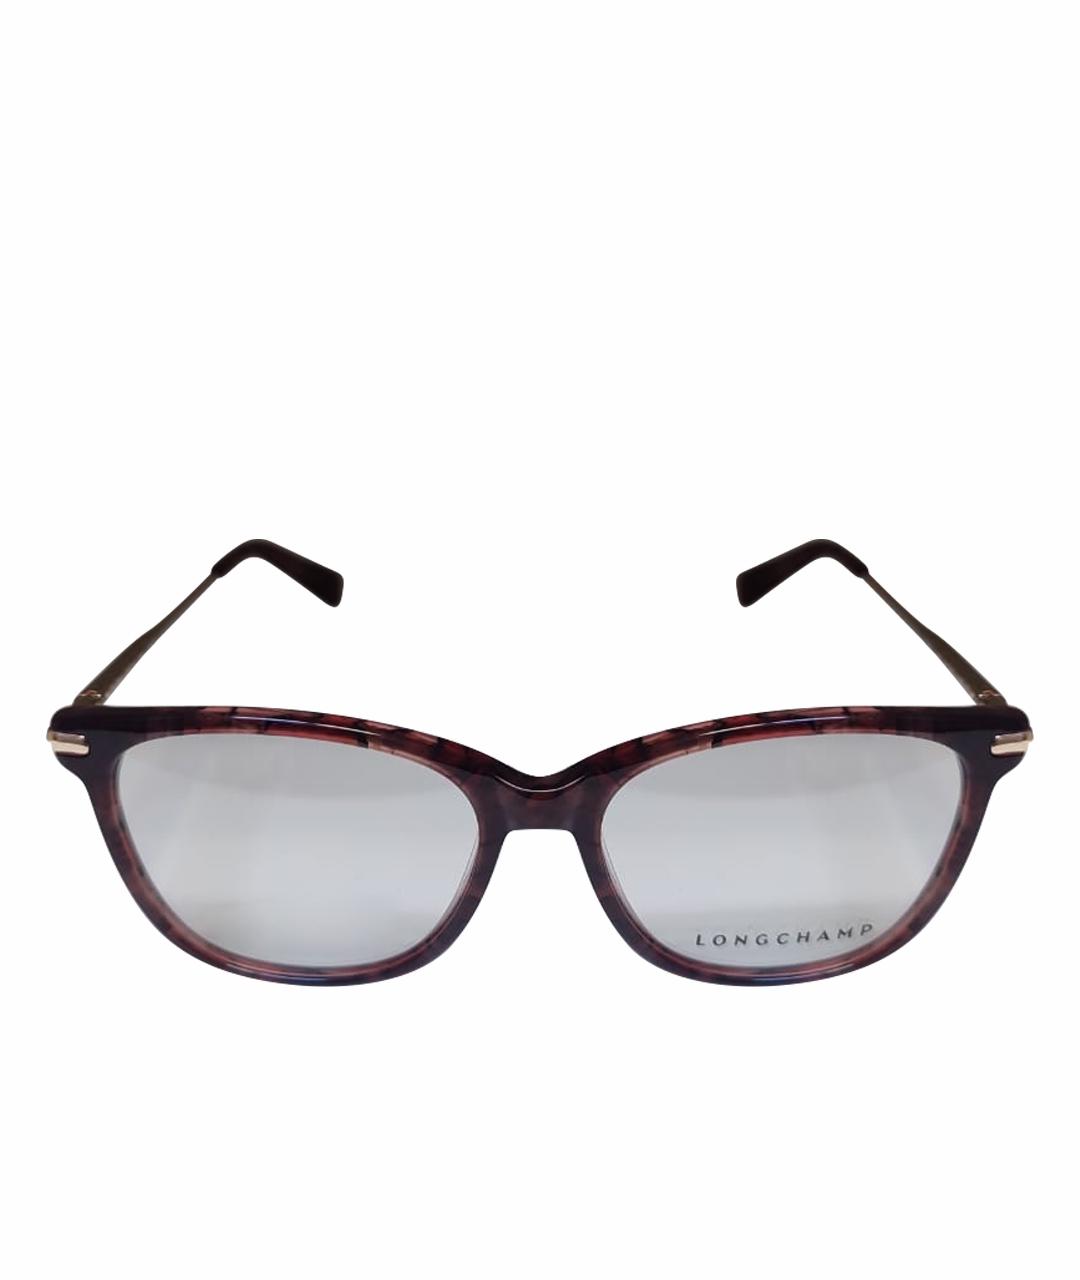 LONGCHAMP Бордовые пластиковые солнцезащитные очки, фото 1